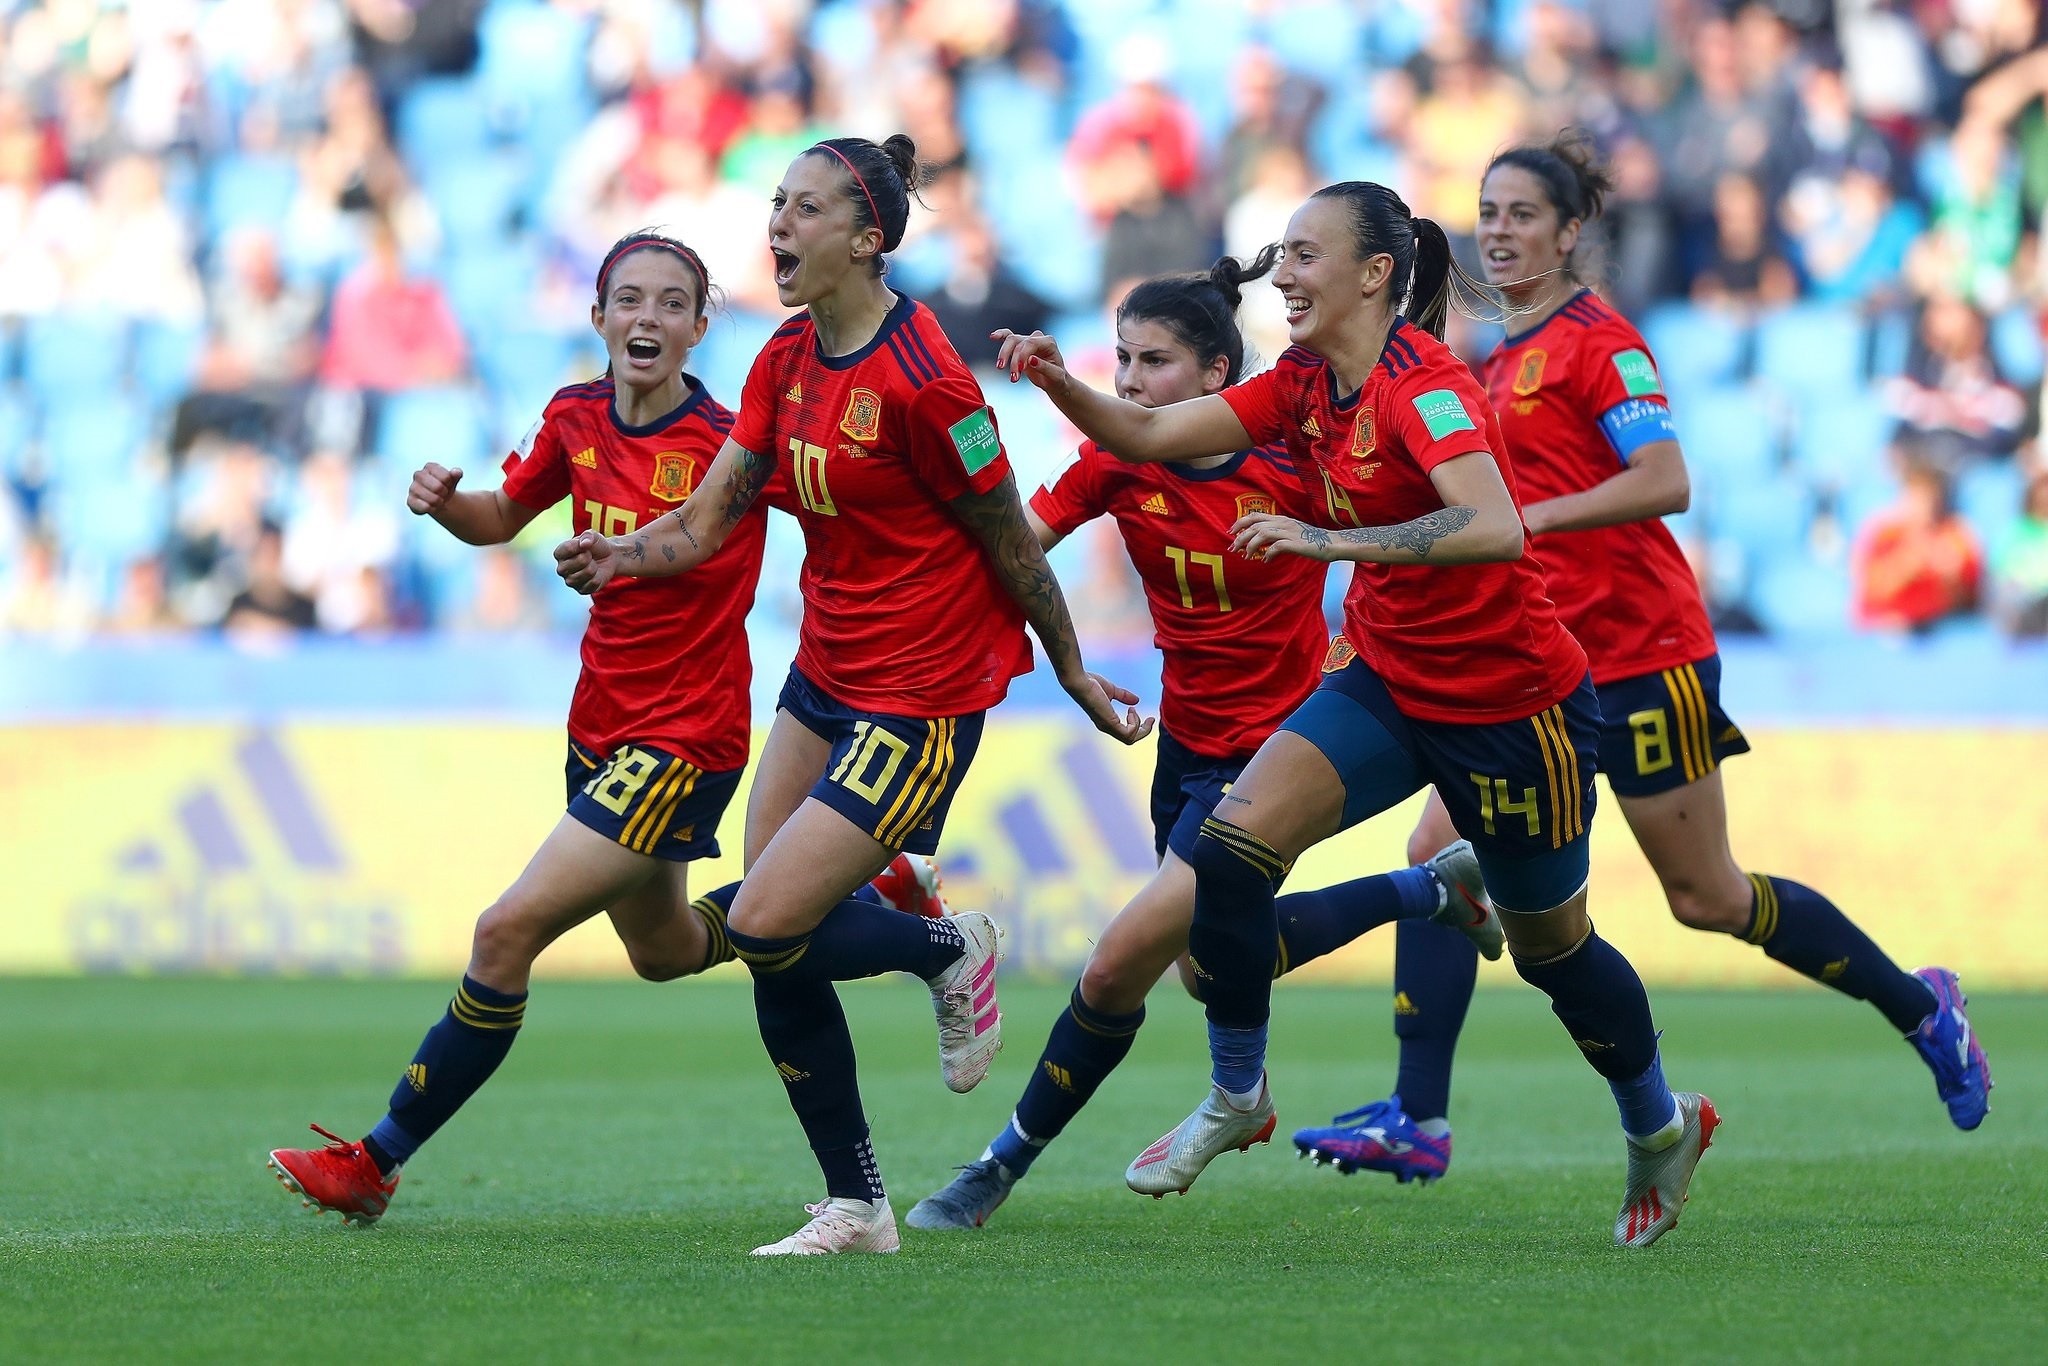 La española femenina se el 'Top 10' ranking FIFA | DeportesOn